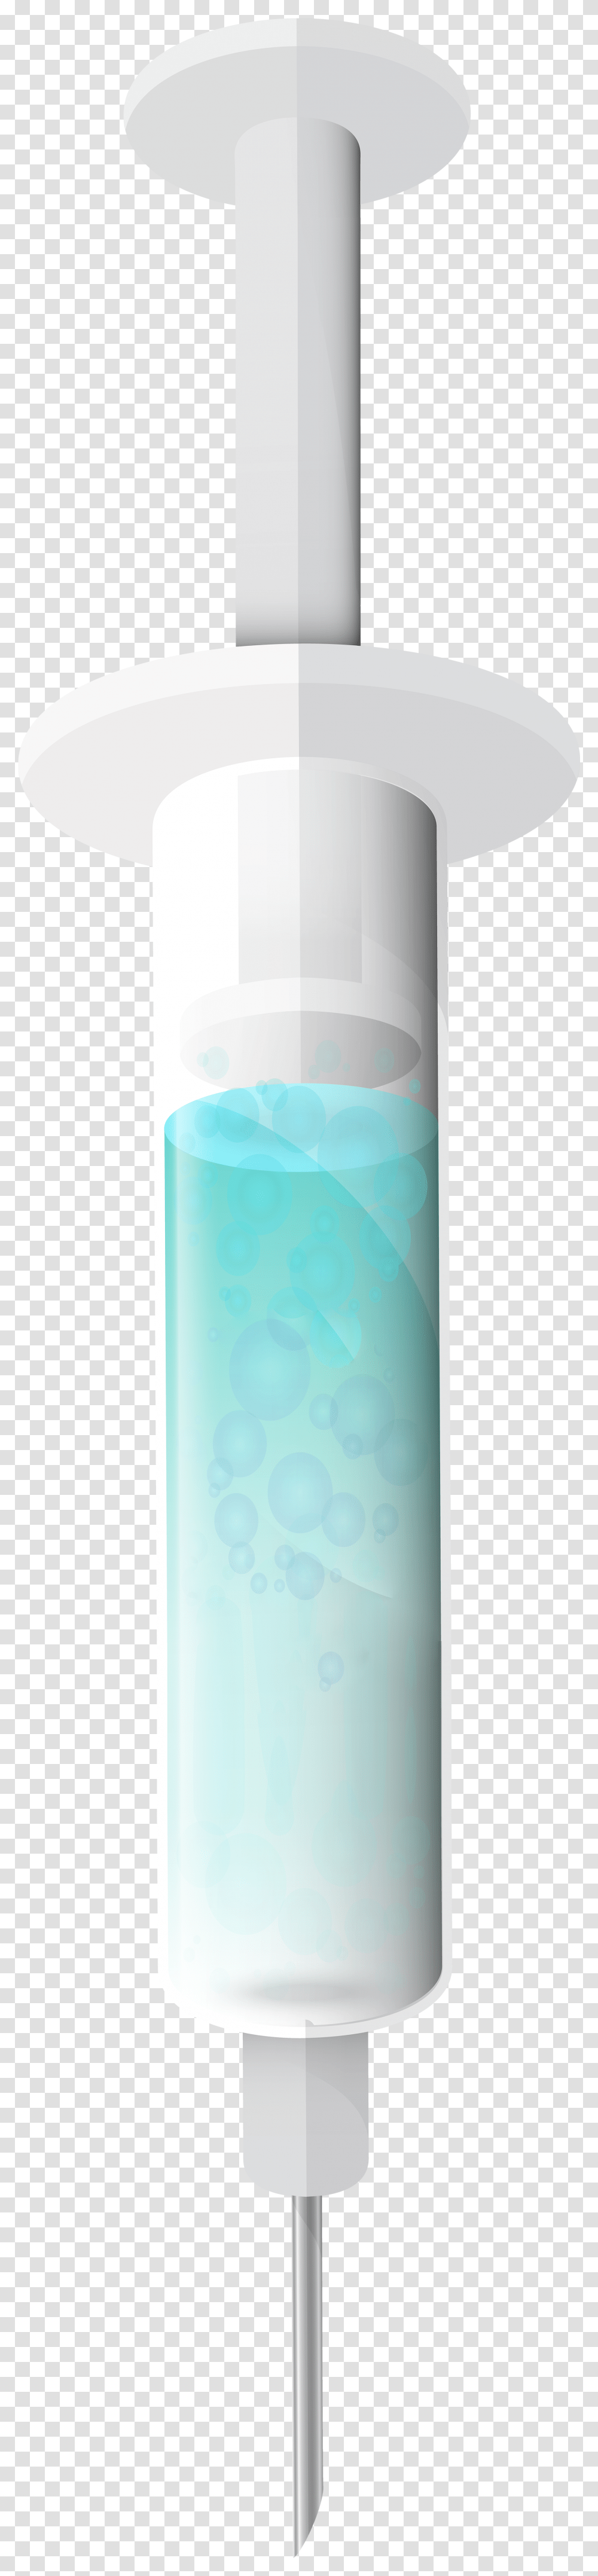 Full Syringe Clip Art, Lamp, Bottle, Water Bottle, Beverage Transparent Png